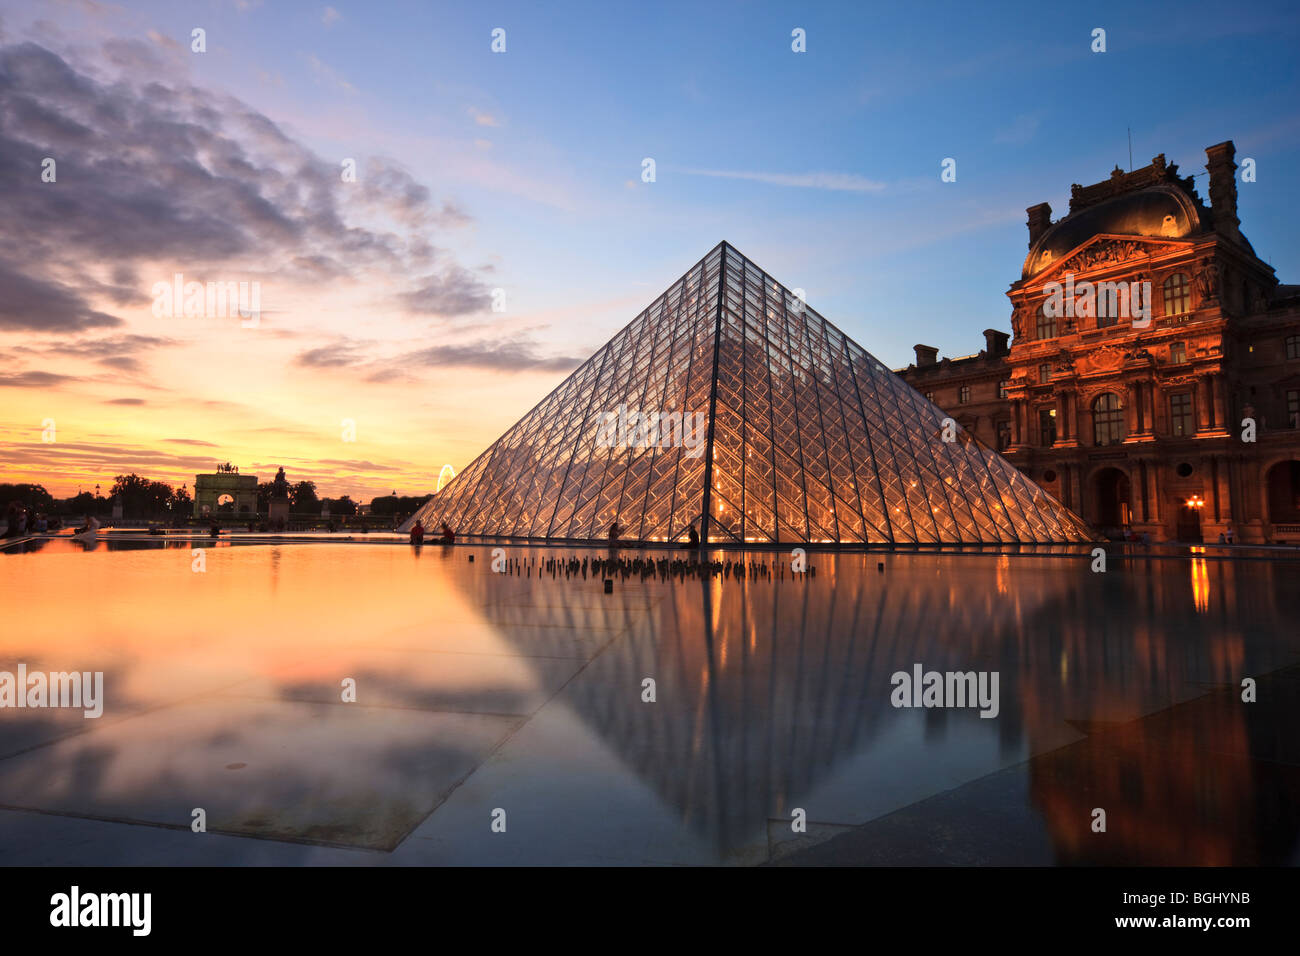 Pyramide des Louvre, Paris, Frankreich. Bei Sonnenuntergang am 22. August 2009 aufgenommen. Stockfoto